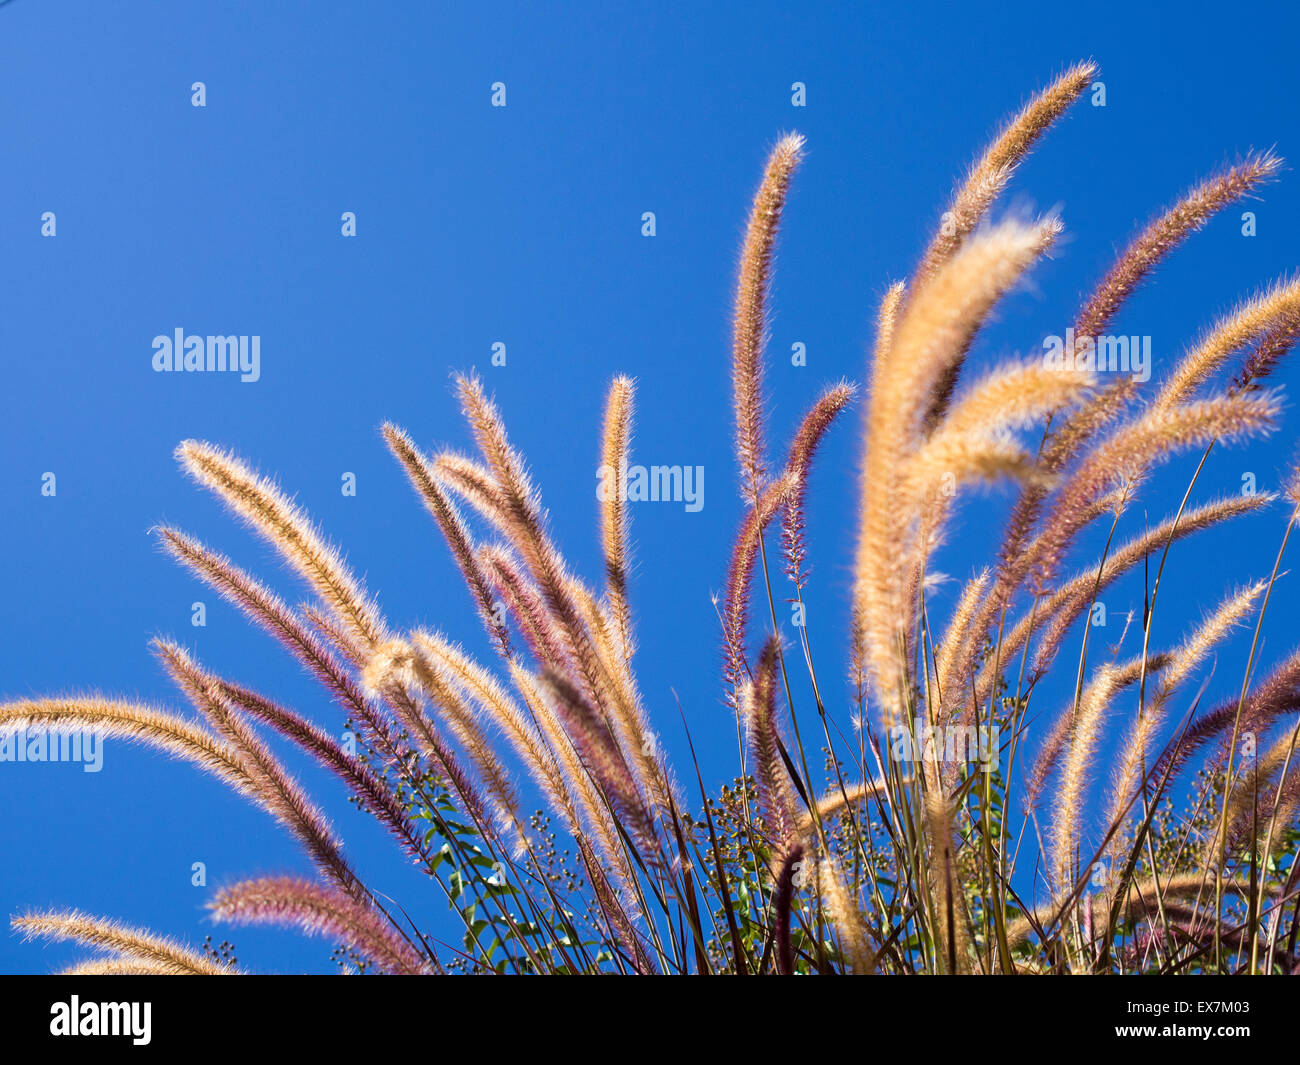 Fuente púrpura hierba ondeando en la brisa contra el cielo azul claro Foto de stock